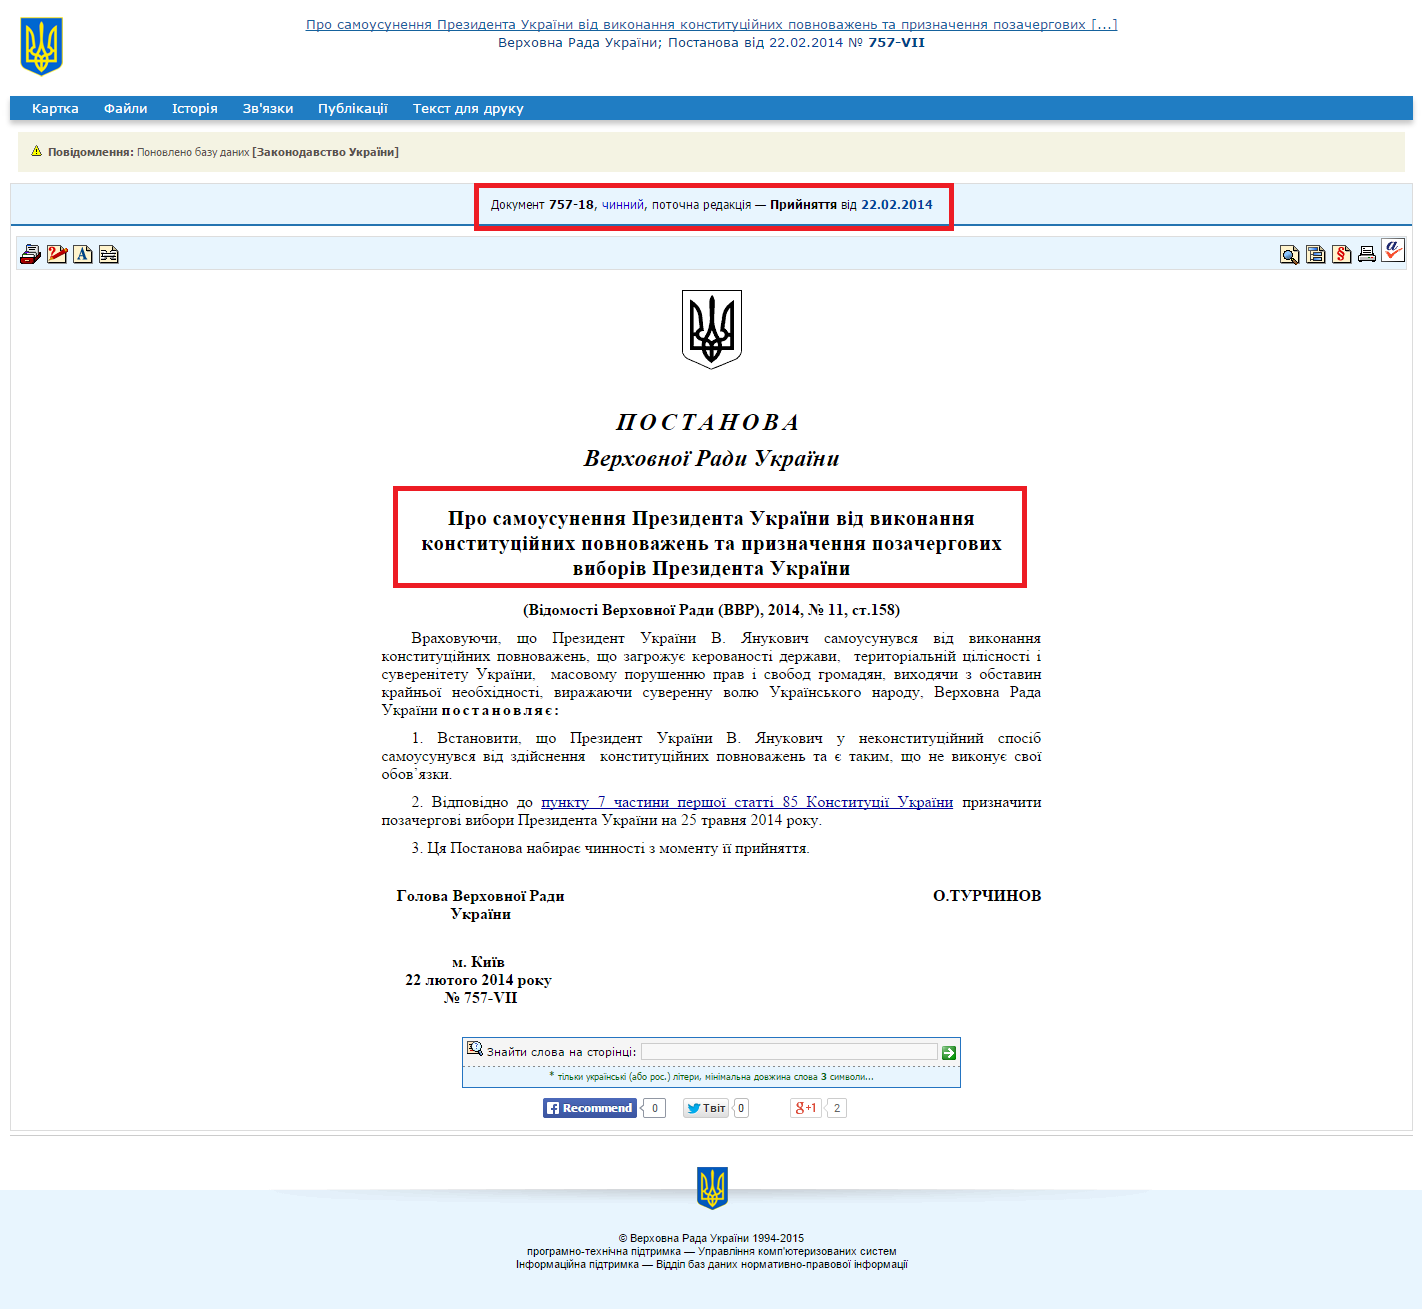 http://zakon4.rada.gov.ua/laws/show/757-18